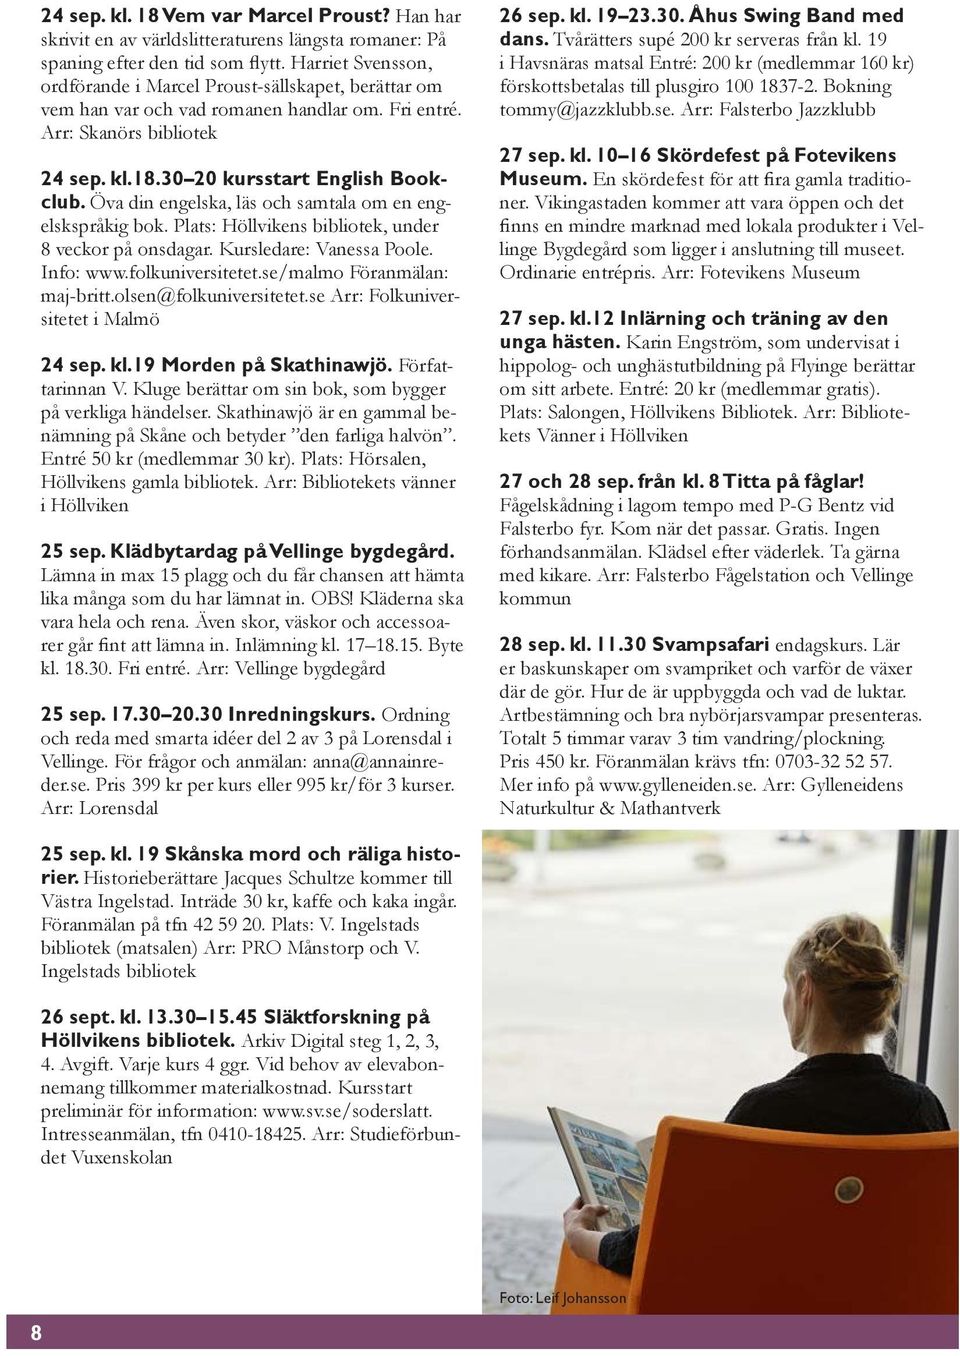 Öva din engelska, läs och samtala om en engelskspråkig bok. Plats: Höllvikens bibliotek, under 8 veckor på onsdagar. Kursledare: Vanessa Poole. Info: www.folkuniversitetet.